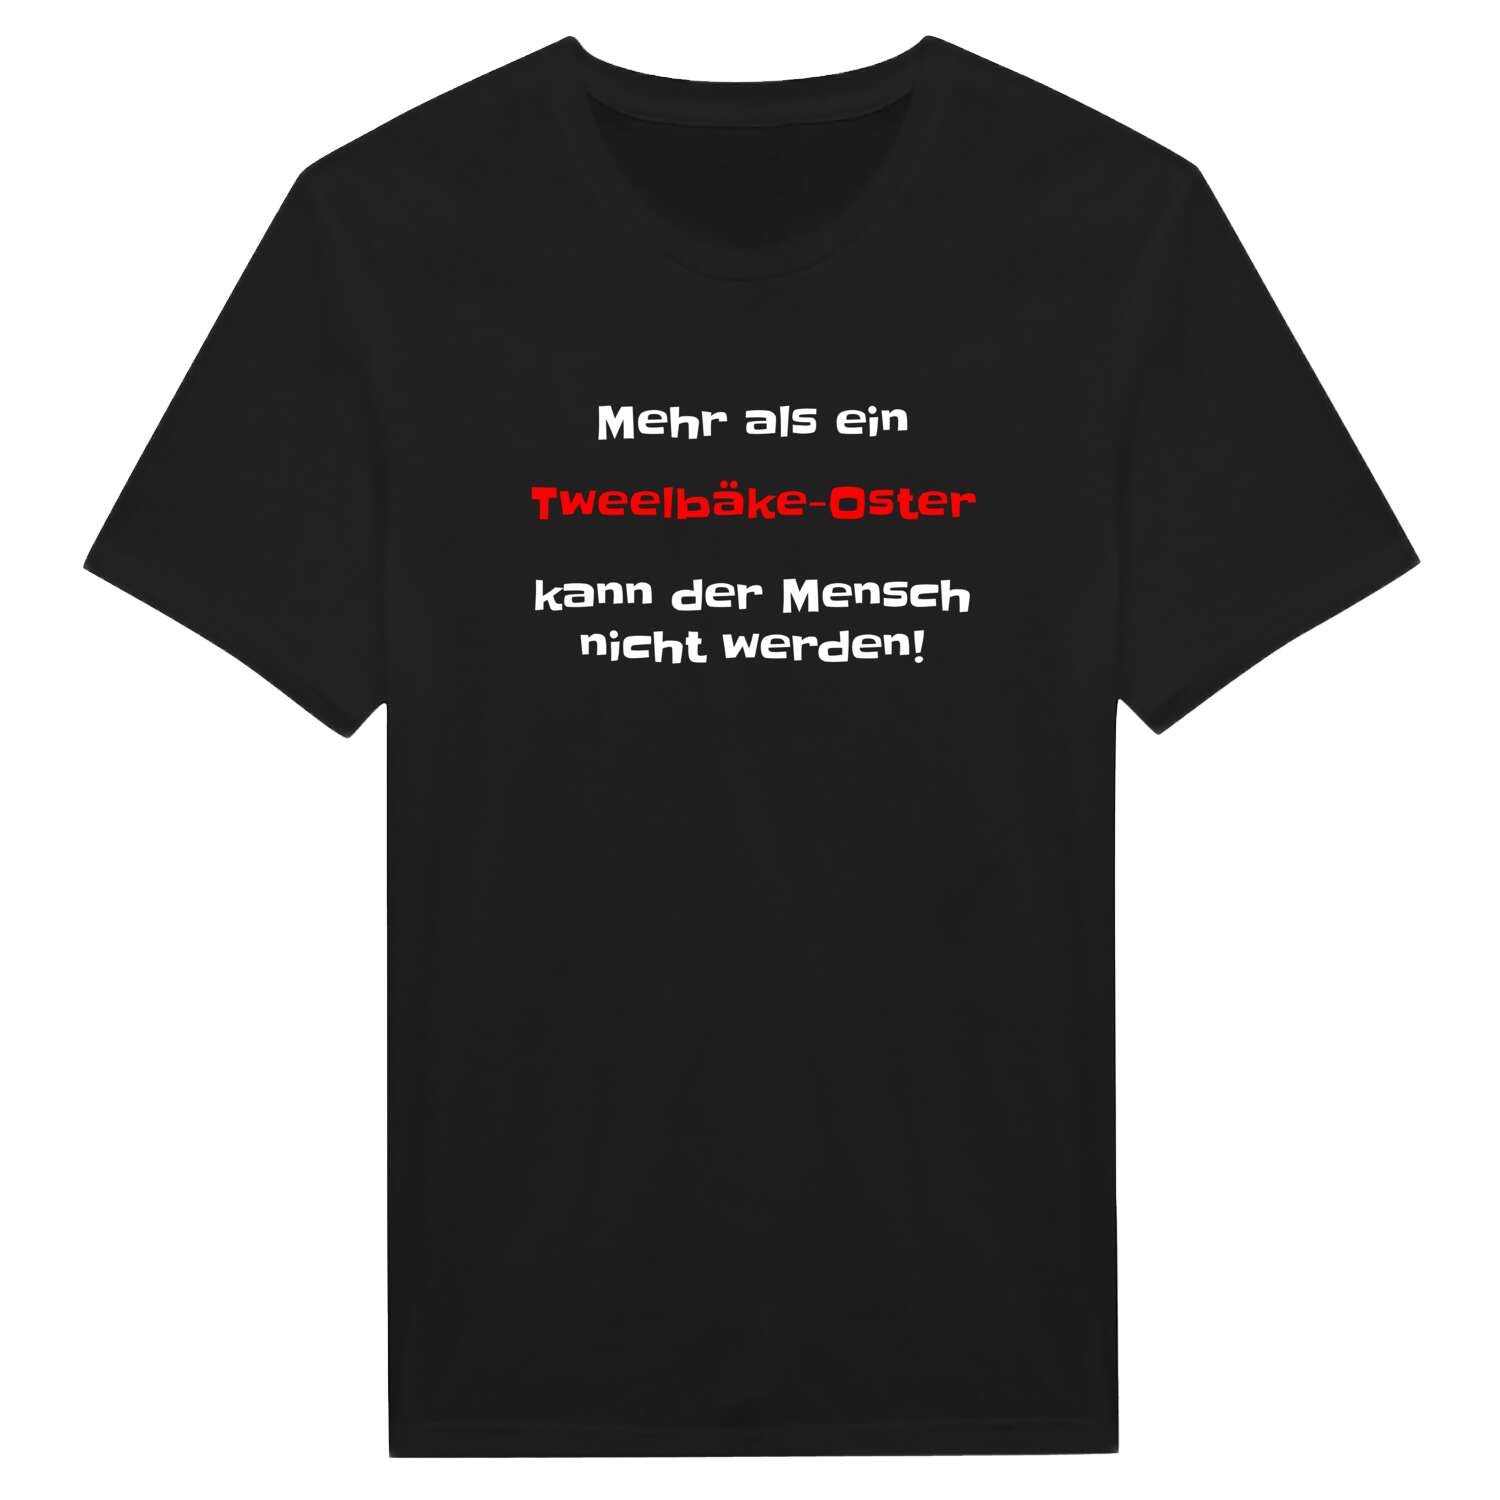 Tweelbäke-Ost T-Shirt »Mehr als ein«